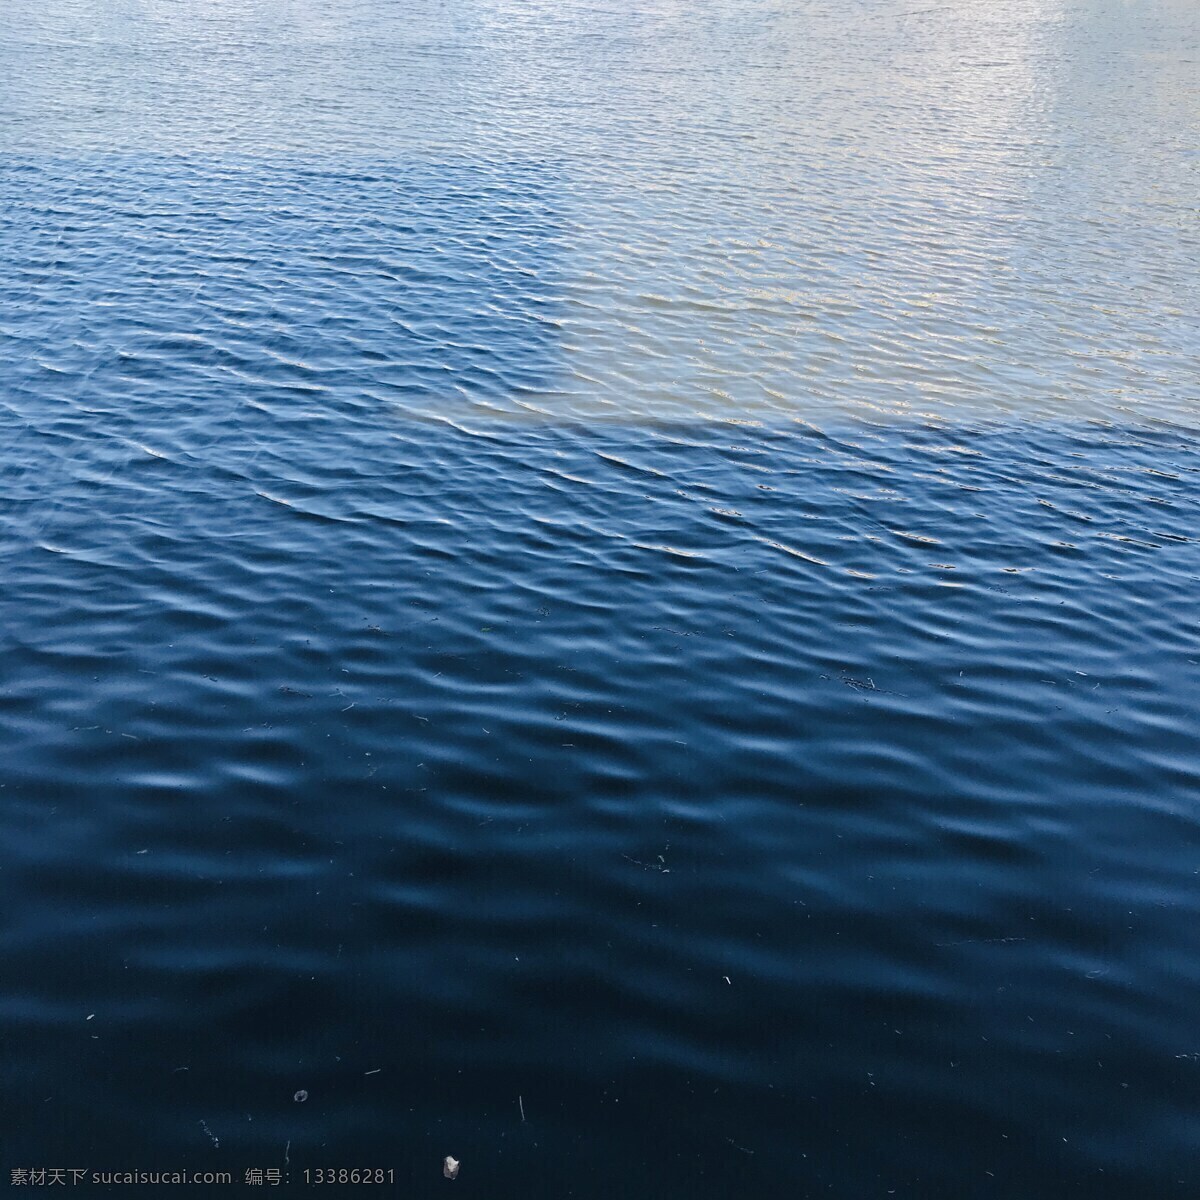 平静的湖水 湖水 水 蓝色 波浪 阳光 自然景观 自然风景